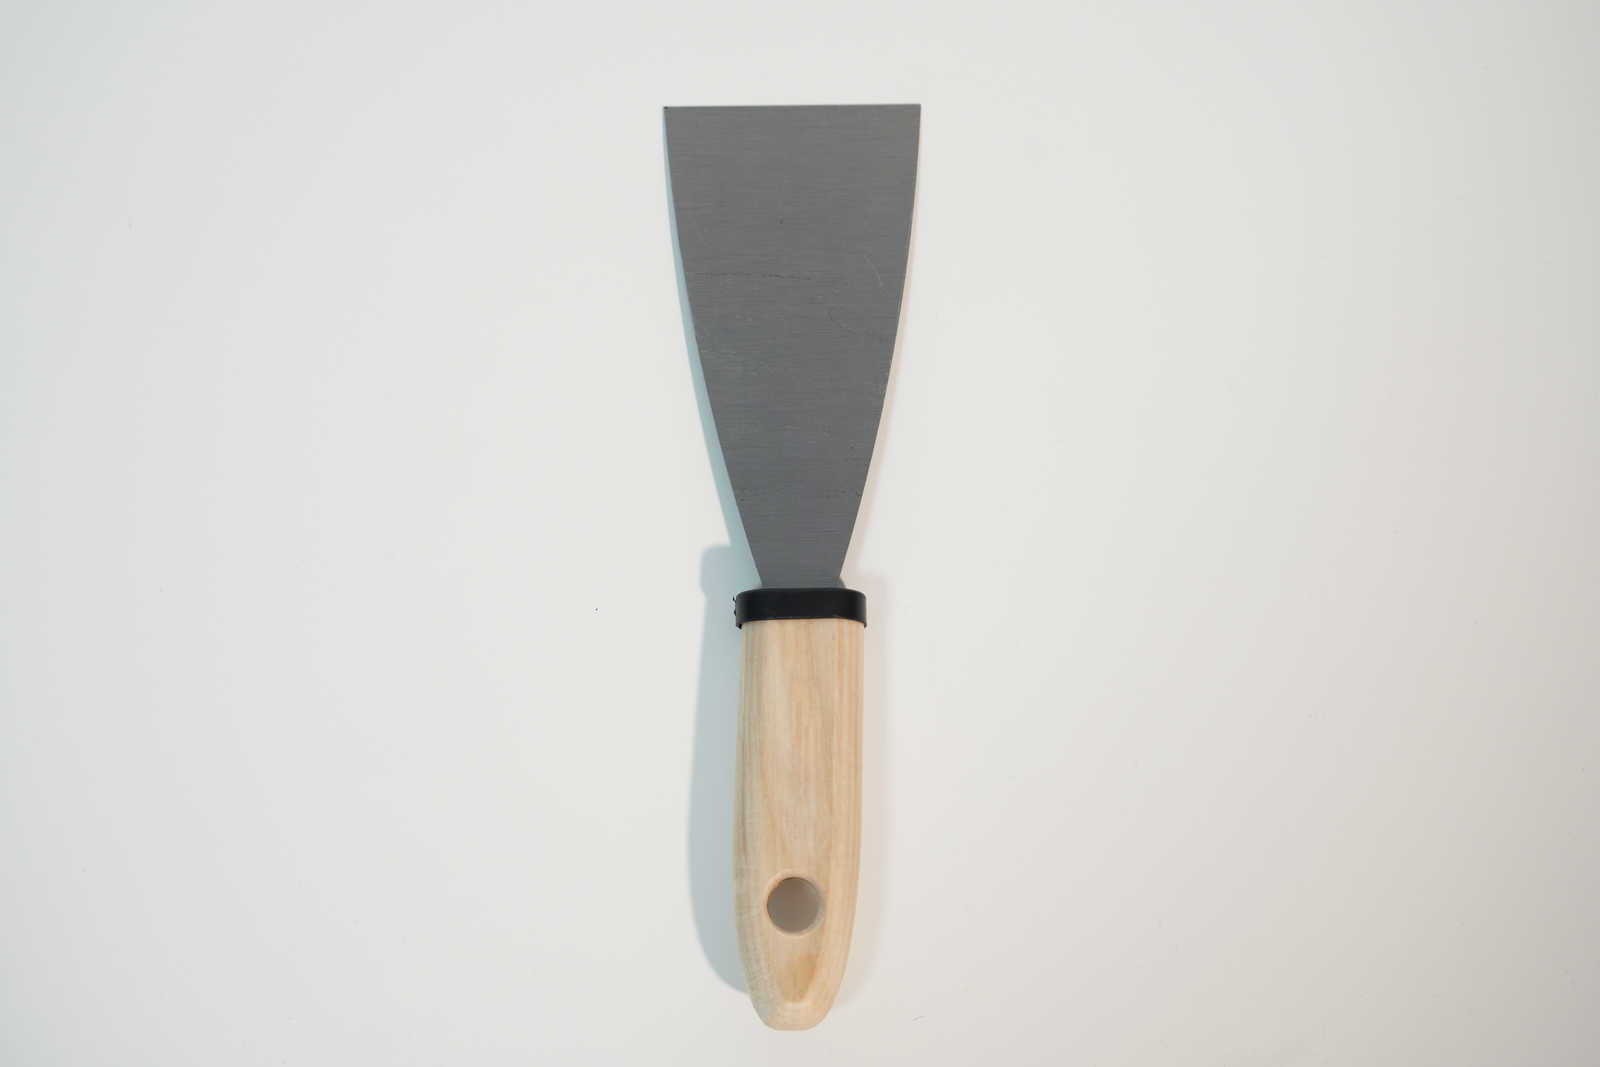             Spatule de peintre 60mm avec lame en acier flexible & manche en bois
        